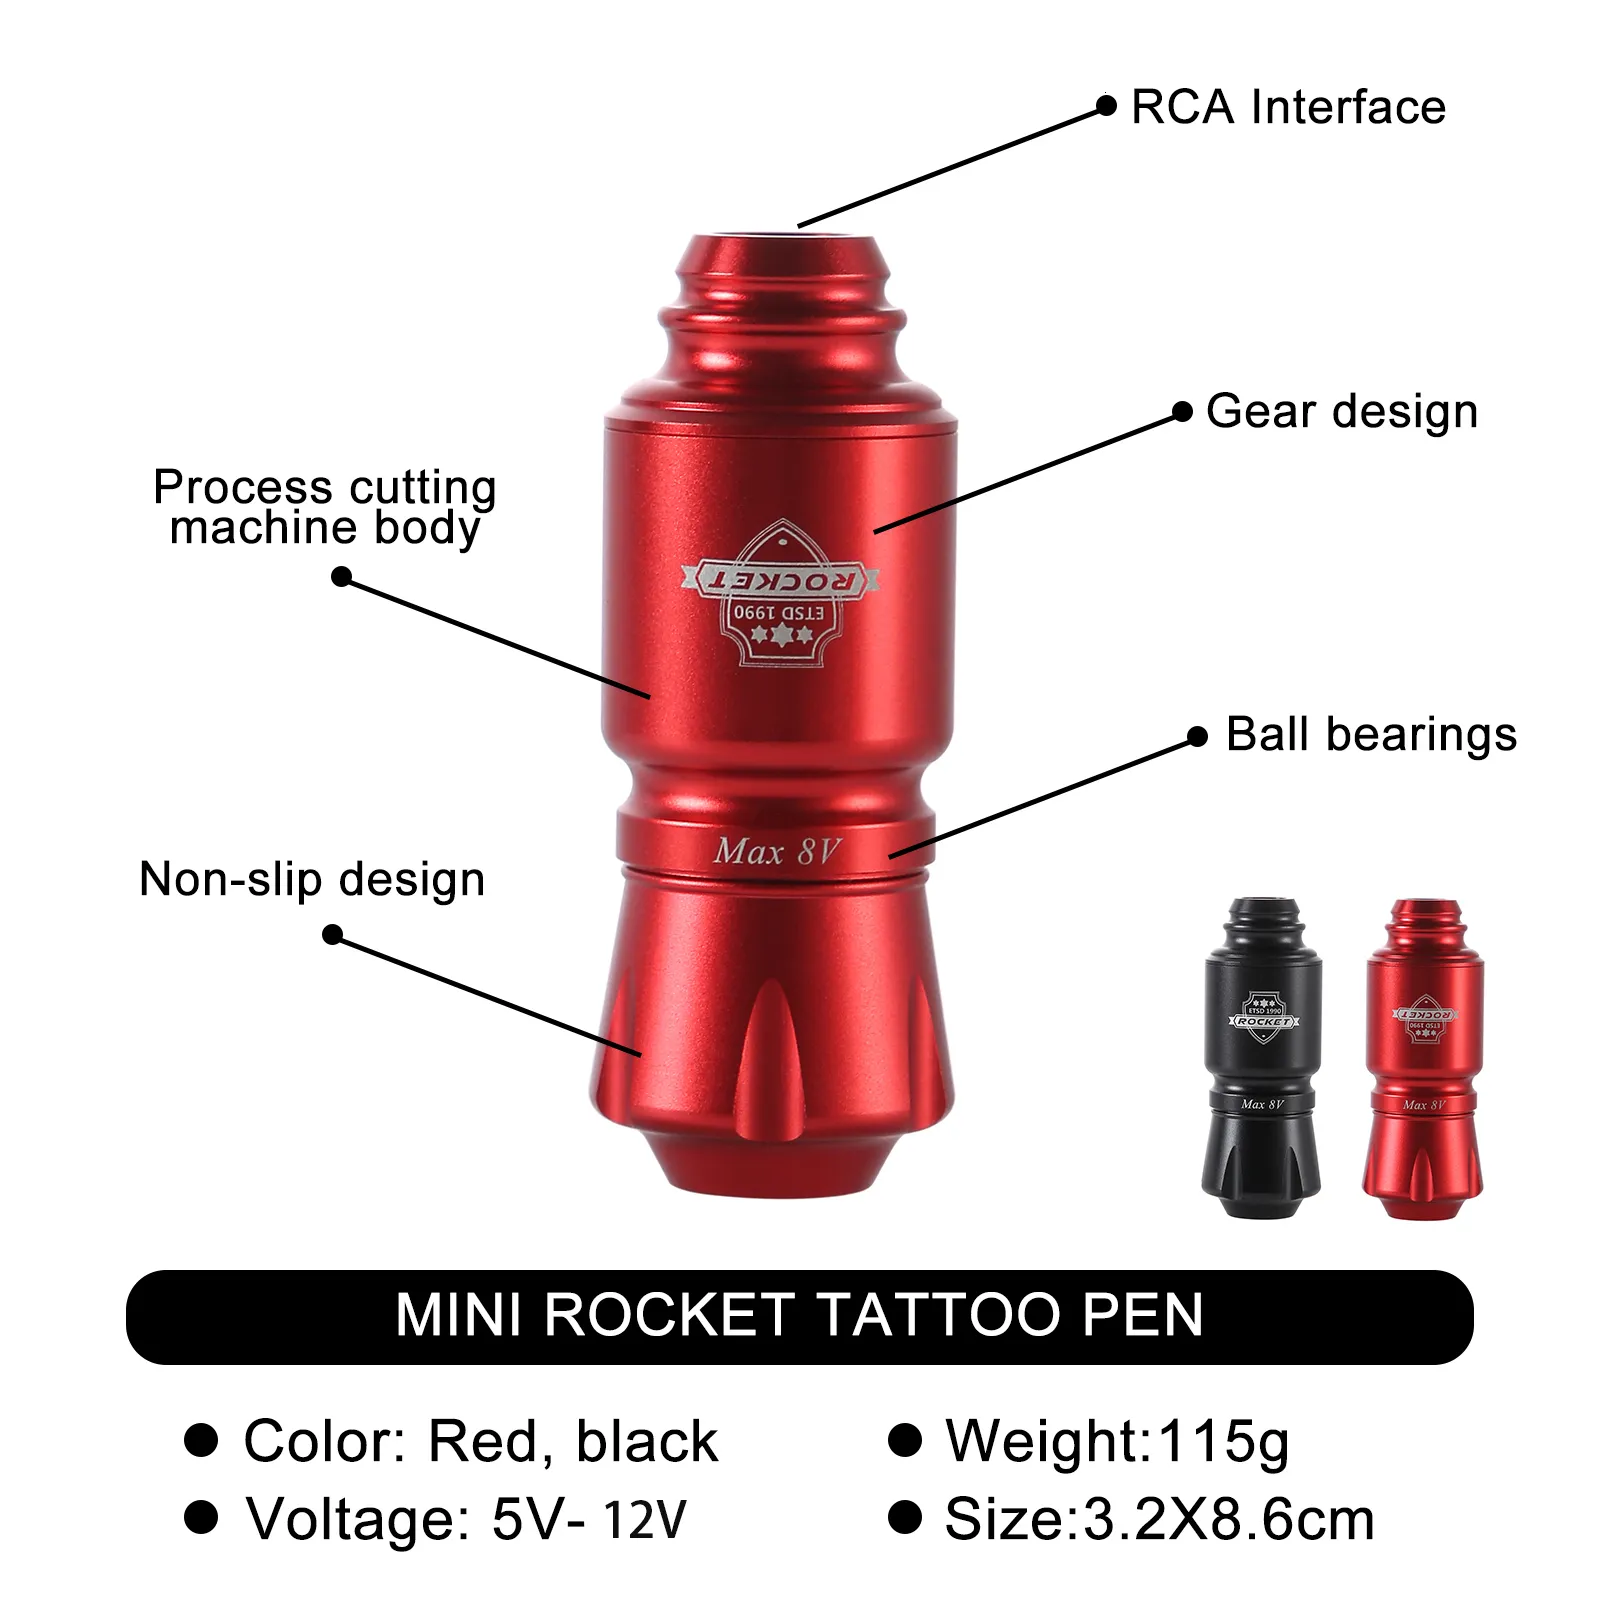 Tatueringsmaskin Tattoo Machine Mini Rocket Set Wireless Tattoo Power Supply RCA Interface Professional Rotary Tattoo Batter Pist Machine Ki 230831